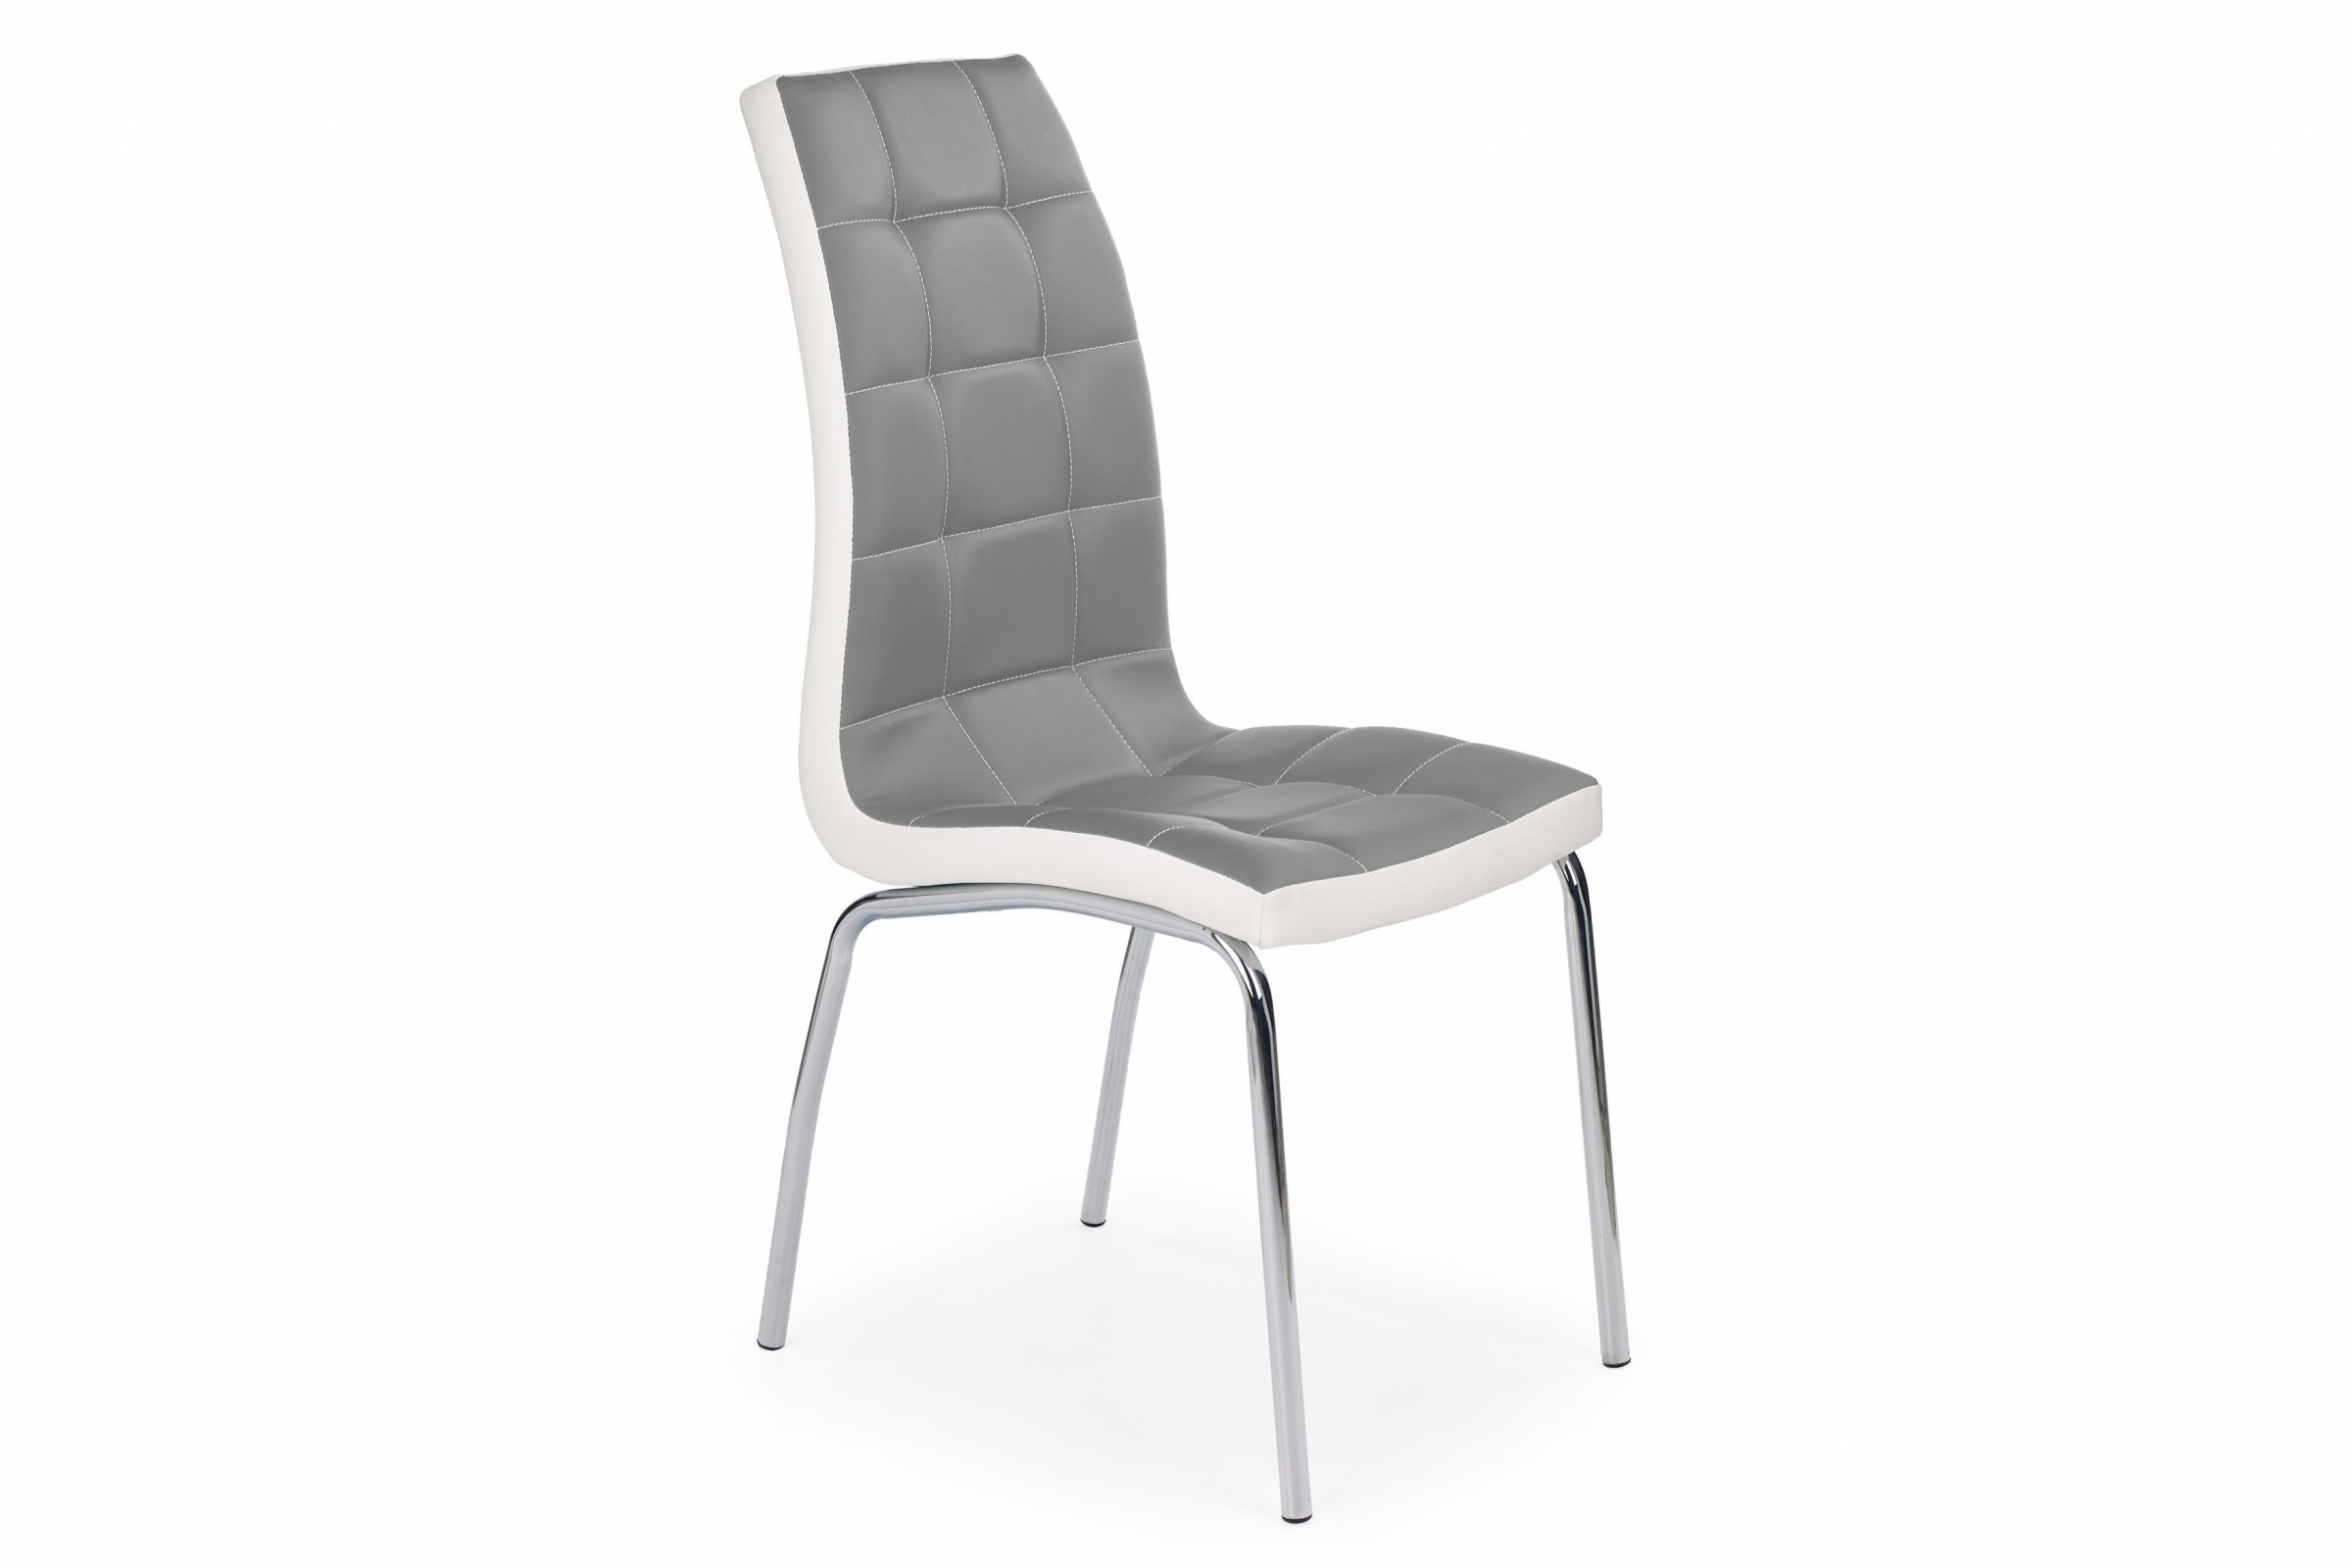 K186 szék - hamu / fehér kárpitozott szék K186 z metalowymi nogami - hamu / fehér